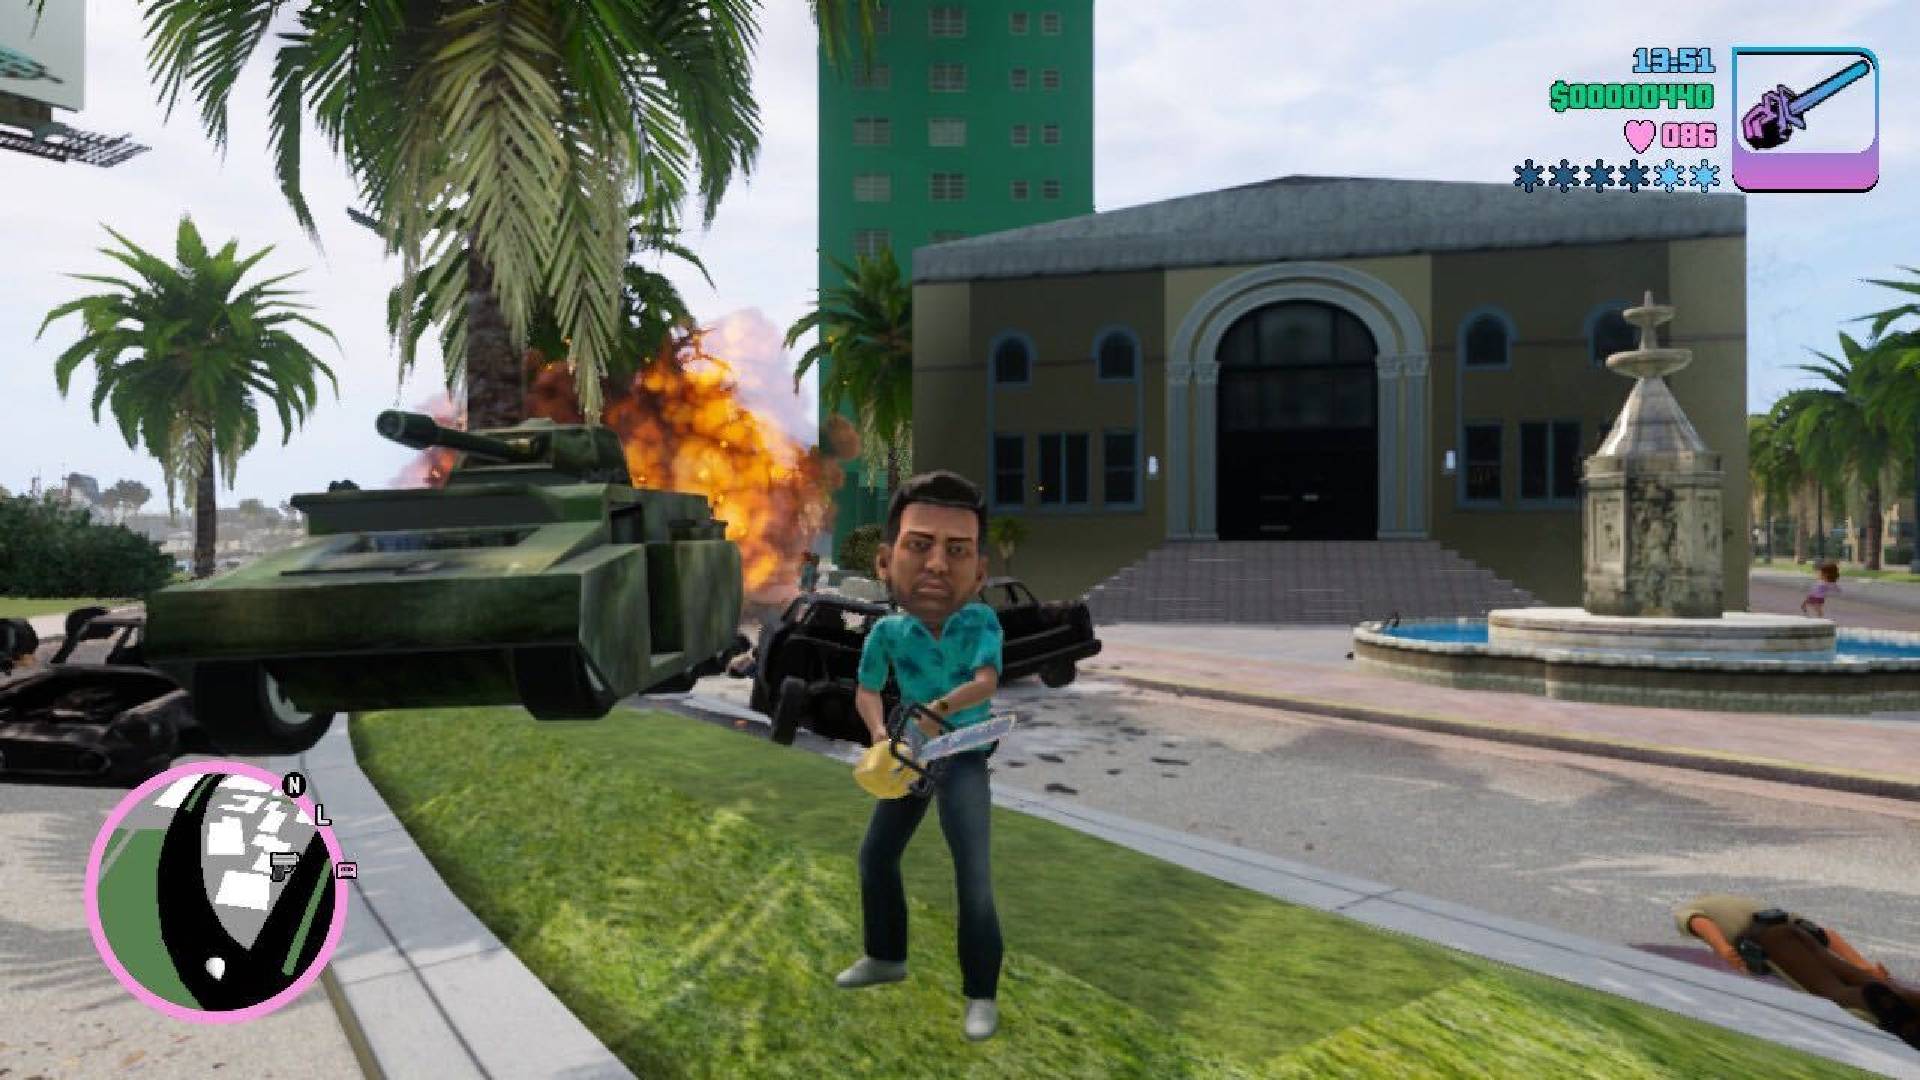 ハワイアンのシャツを着た男性のキャラクターは、チェーンソーを持って燃えているタンクの前に立っています